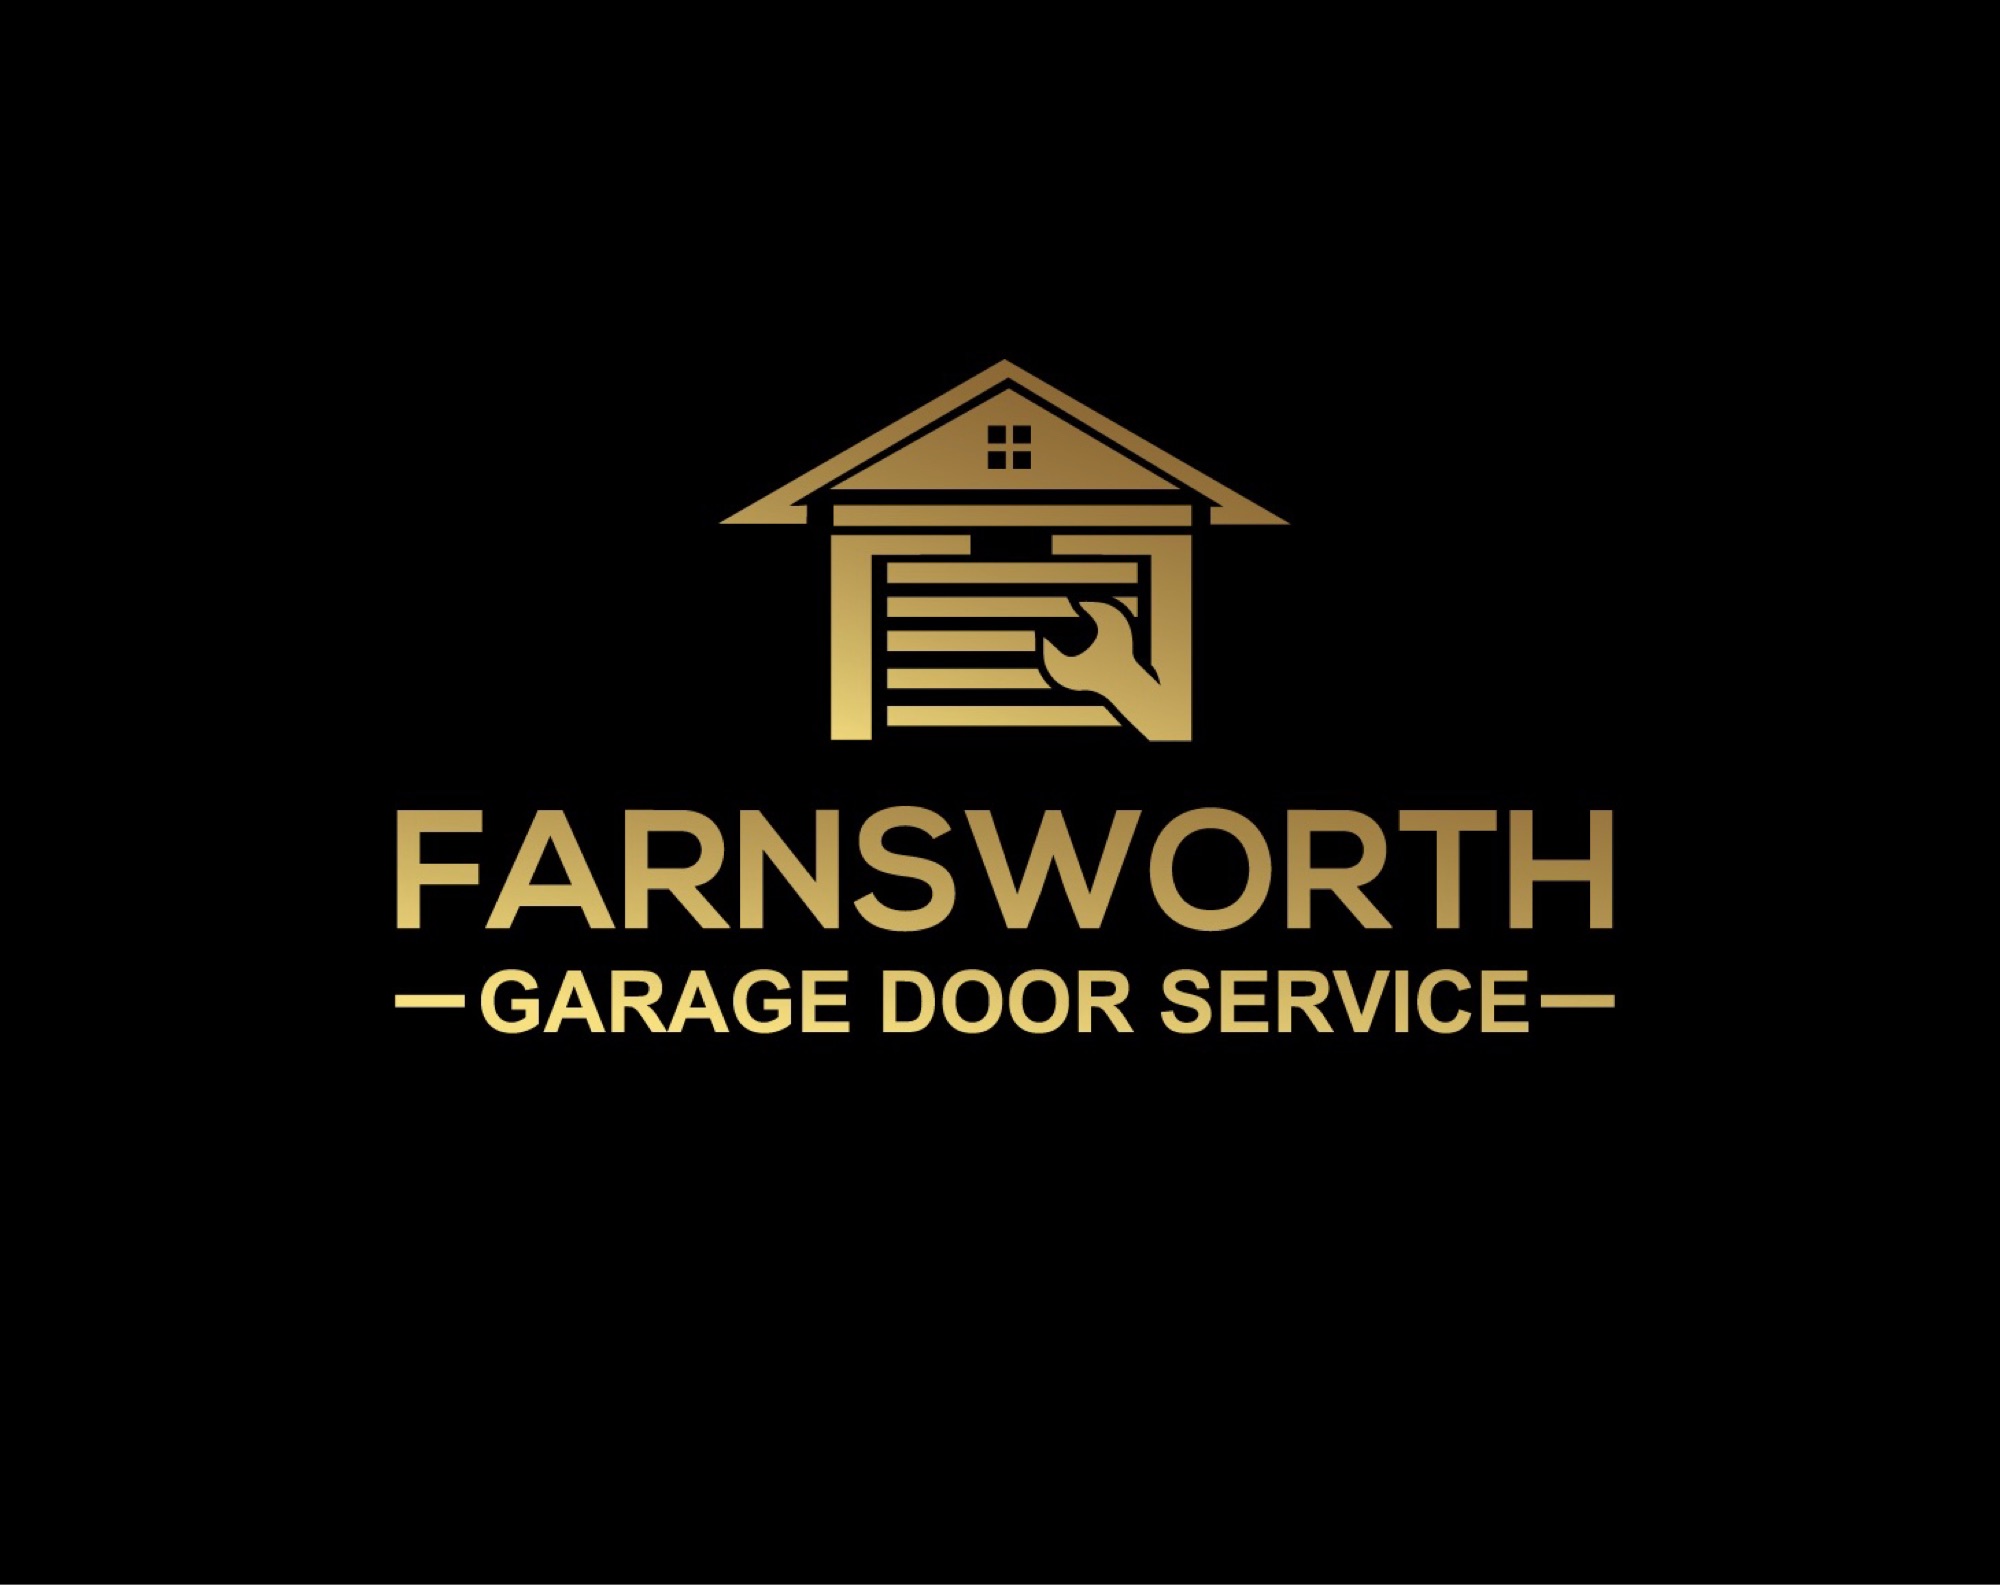 Farnsworth Garage Door Service - Unlicensed Contractor Logo